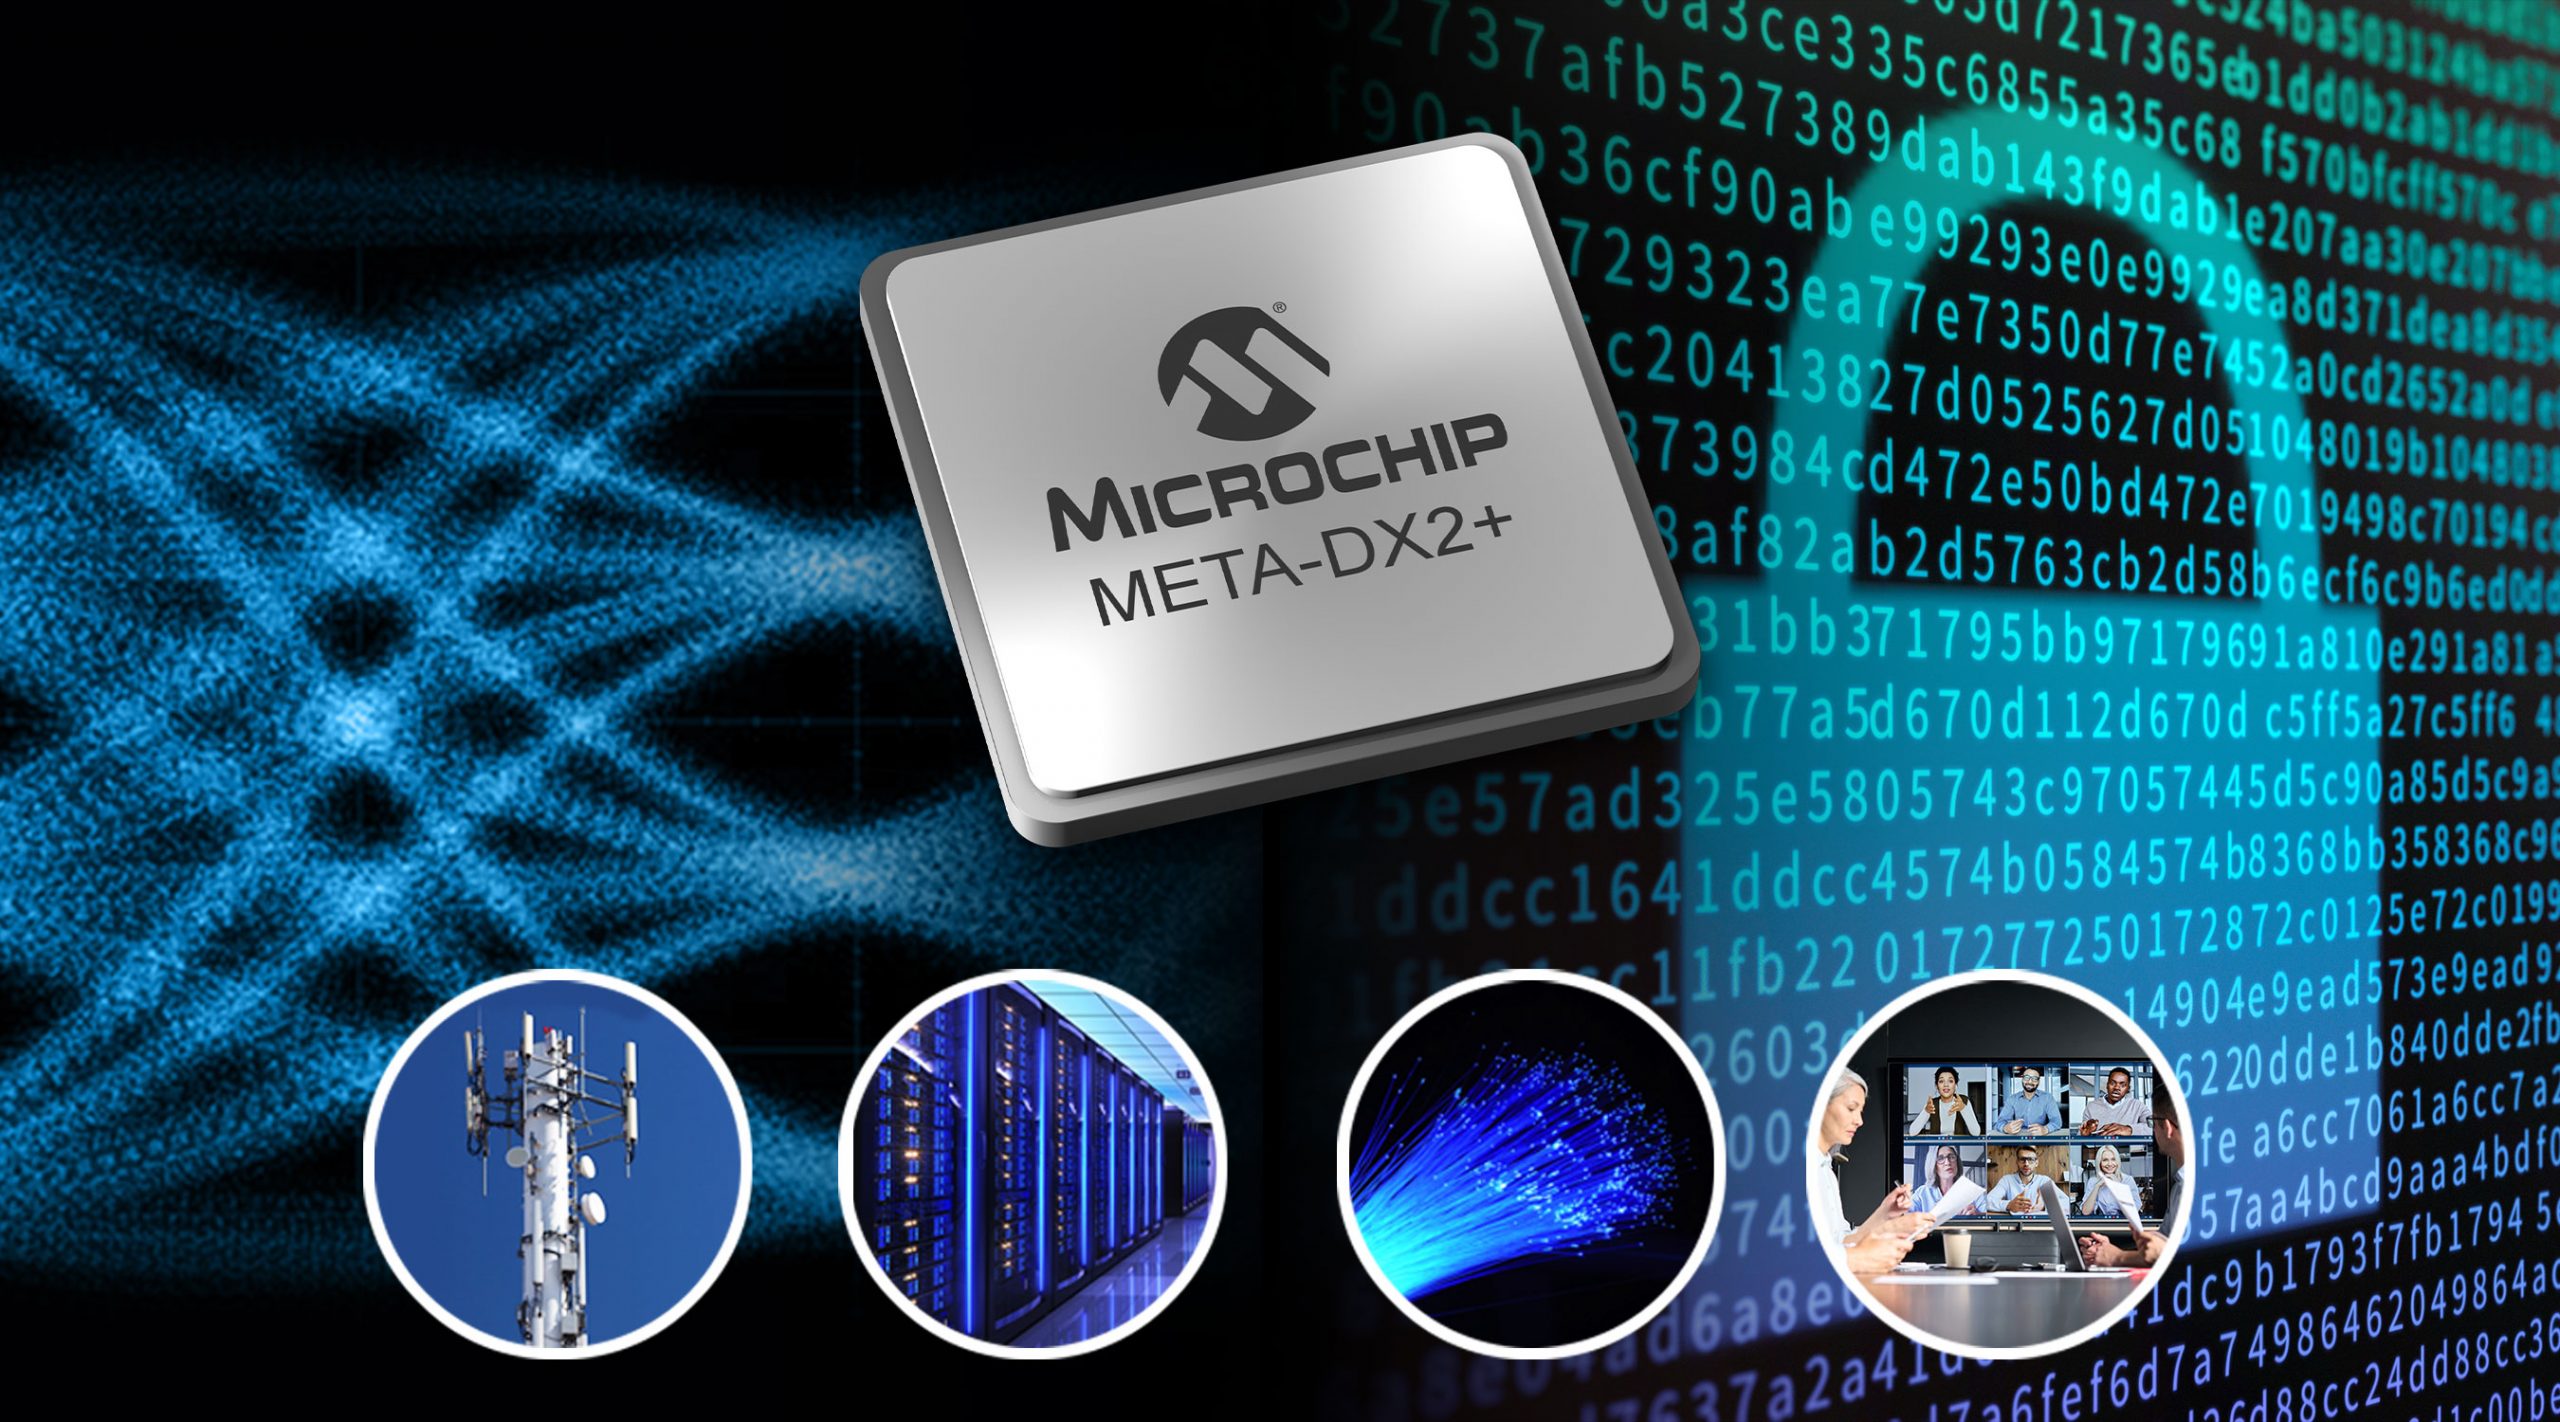 Microchip ra mắt dòng sản phẩm Ethernet Lớp Vật lý bảo mật cấp độ Terabit đầu tiên trong ngành với tính năng Gộp Cổng (Port Aggregation) dành cho kết nối doanh nghiệp và điện toán đám mây